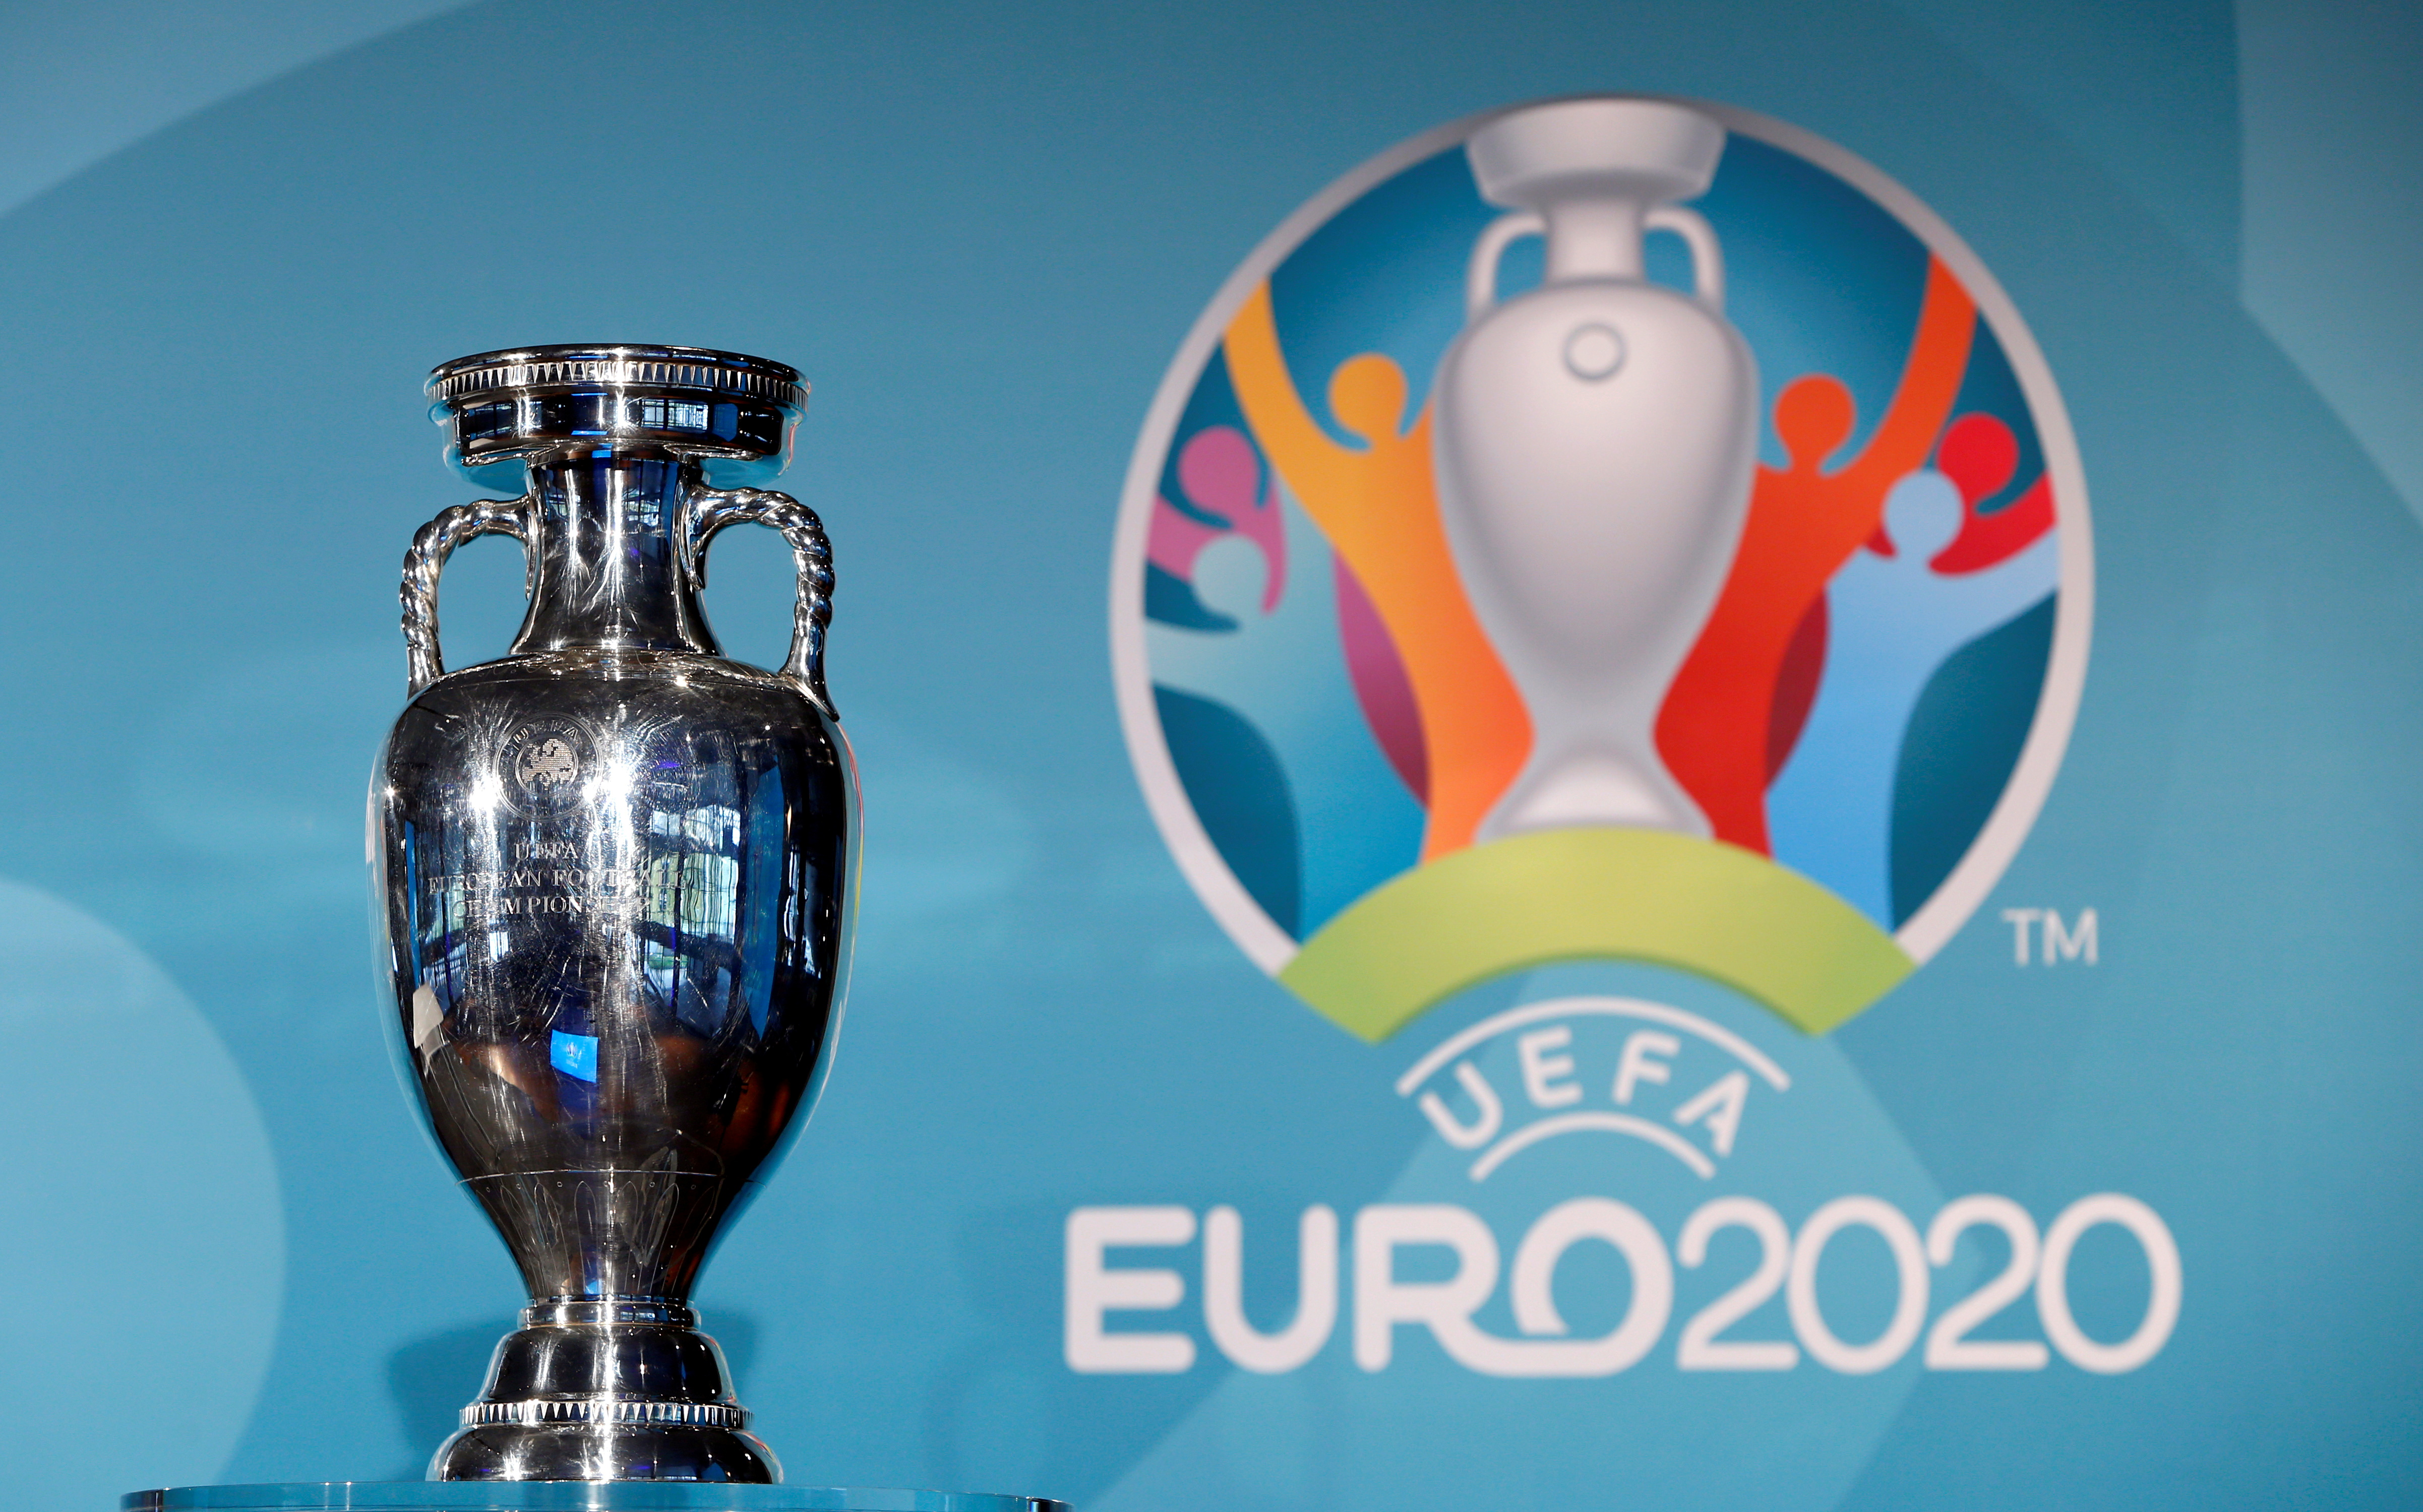 La Eurocopa 2020 se pone en marcha este viernes: 24 equipos buscarán la gloria a lo largo de 11 sedes repartidas por todo el continente (Foto: REUTERS)